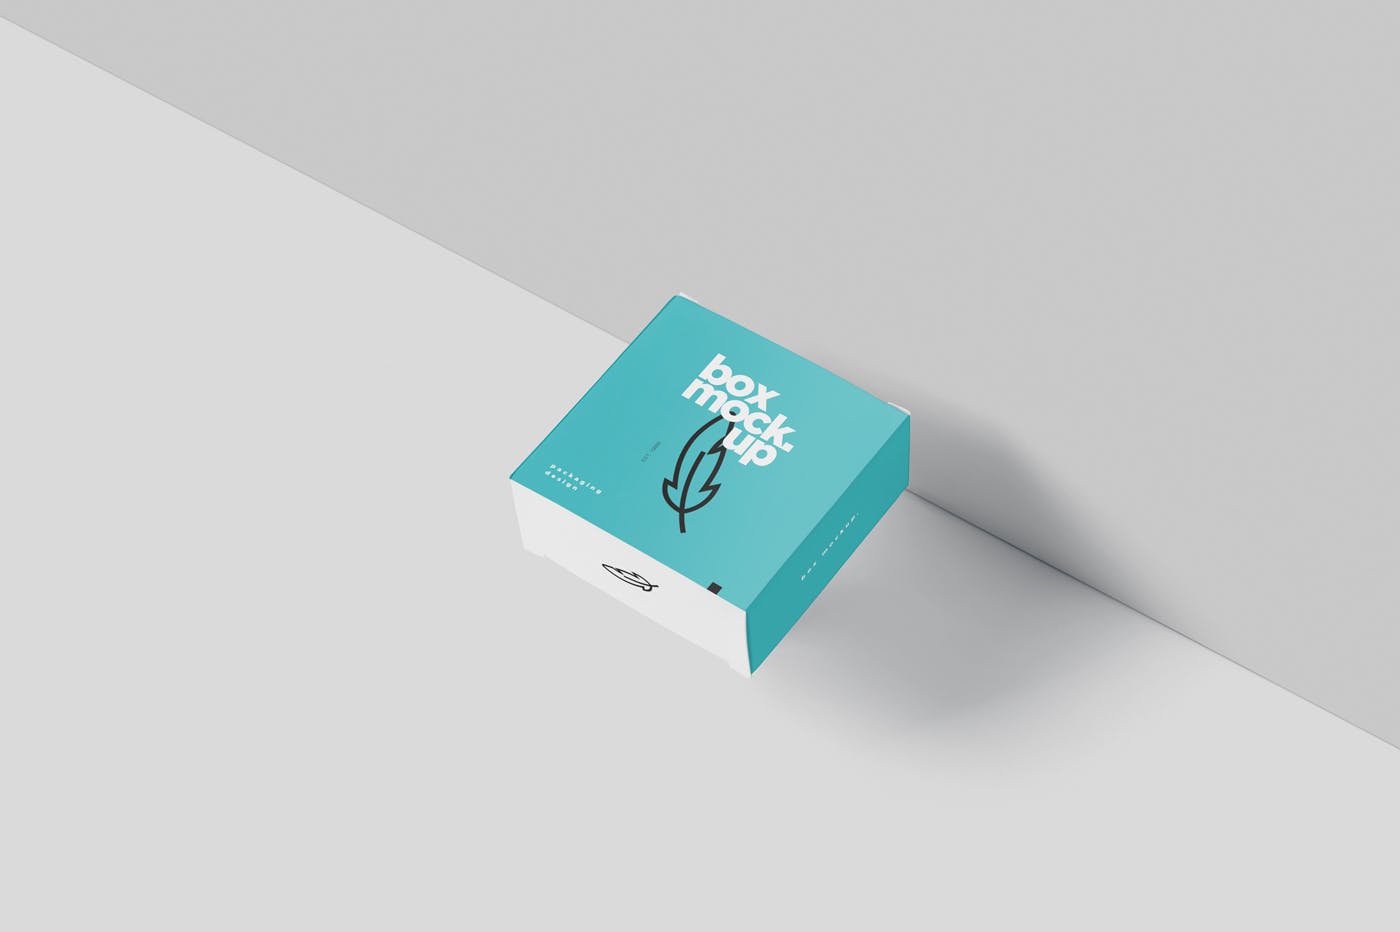 扁平方形包装盒外观设计效果图蚂蚁素材精选 Box Mockup – Square Slim Size插图(2)